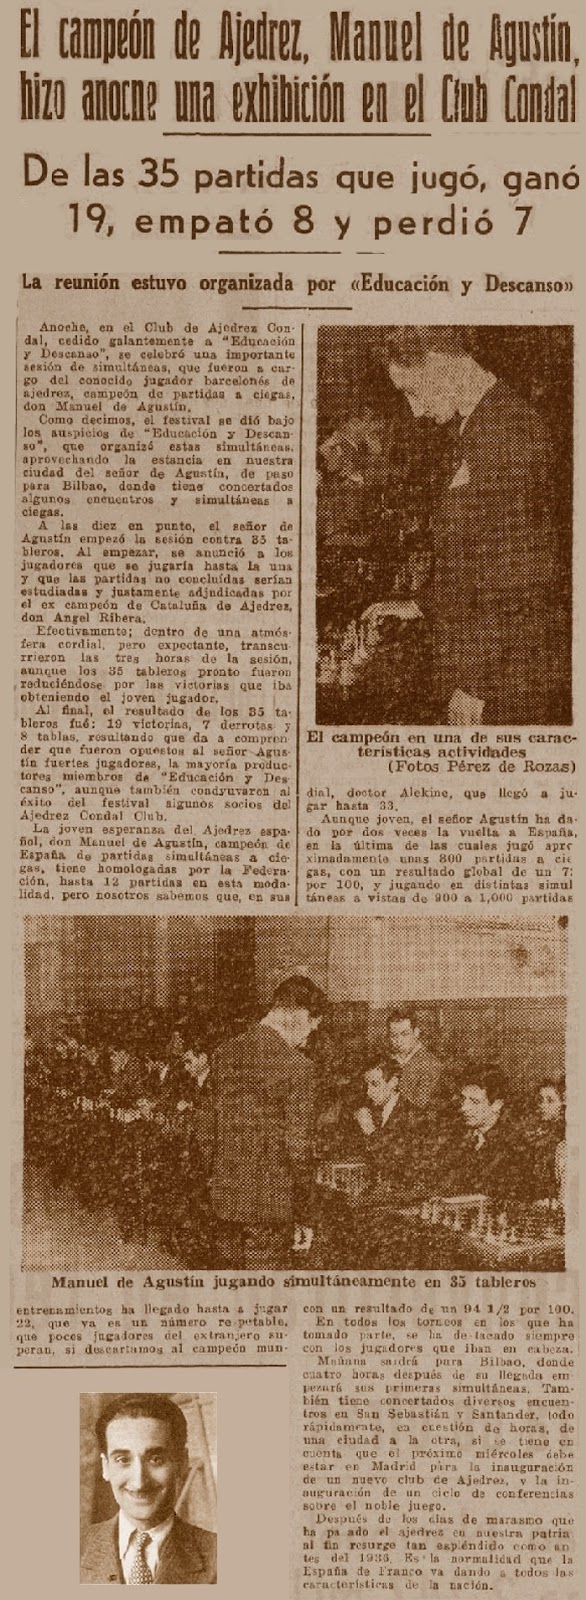 Simultáneas de ajedrez de Manuel de Agustín Albadalejo en el Escacs Comal Club en 1941